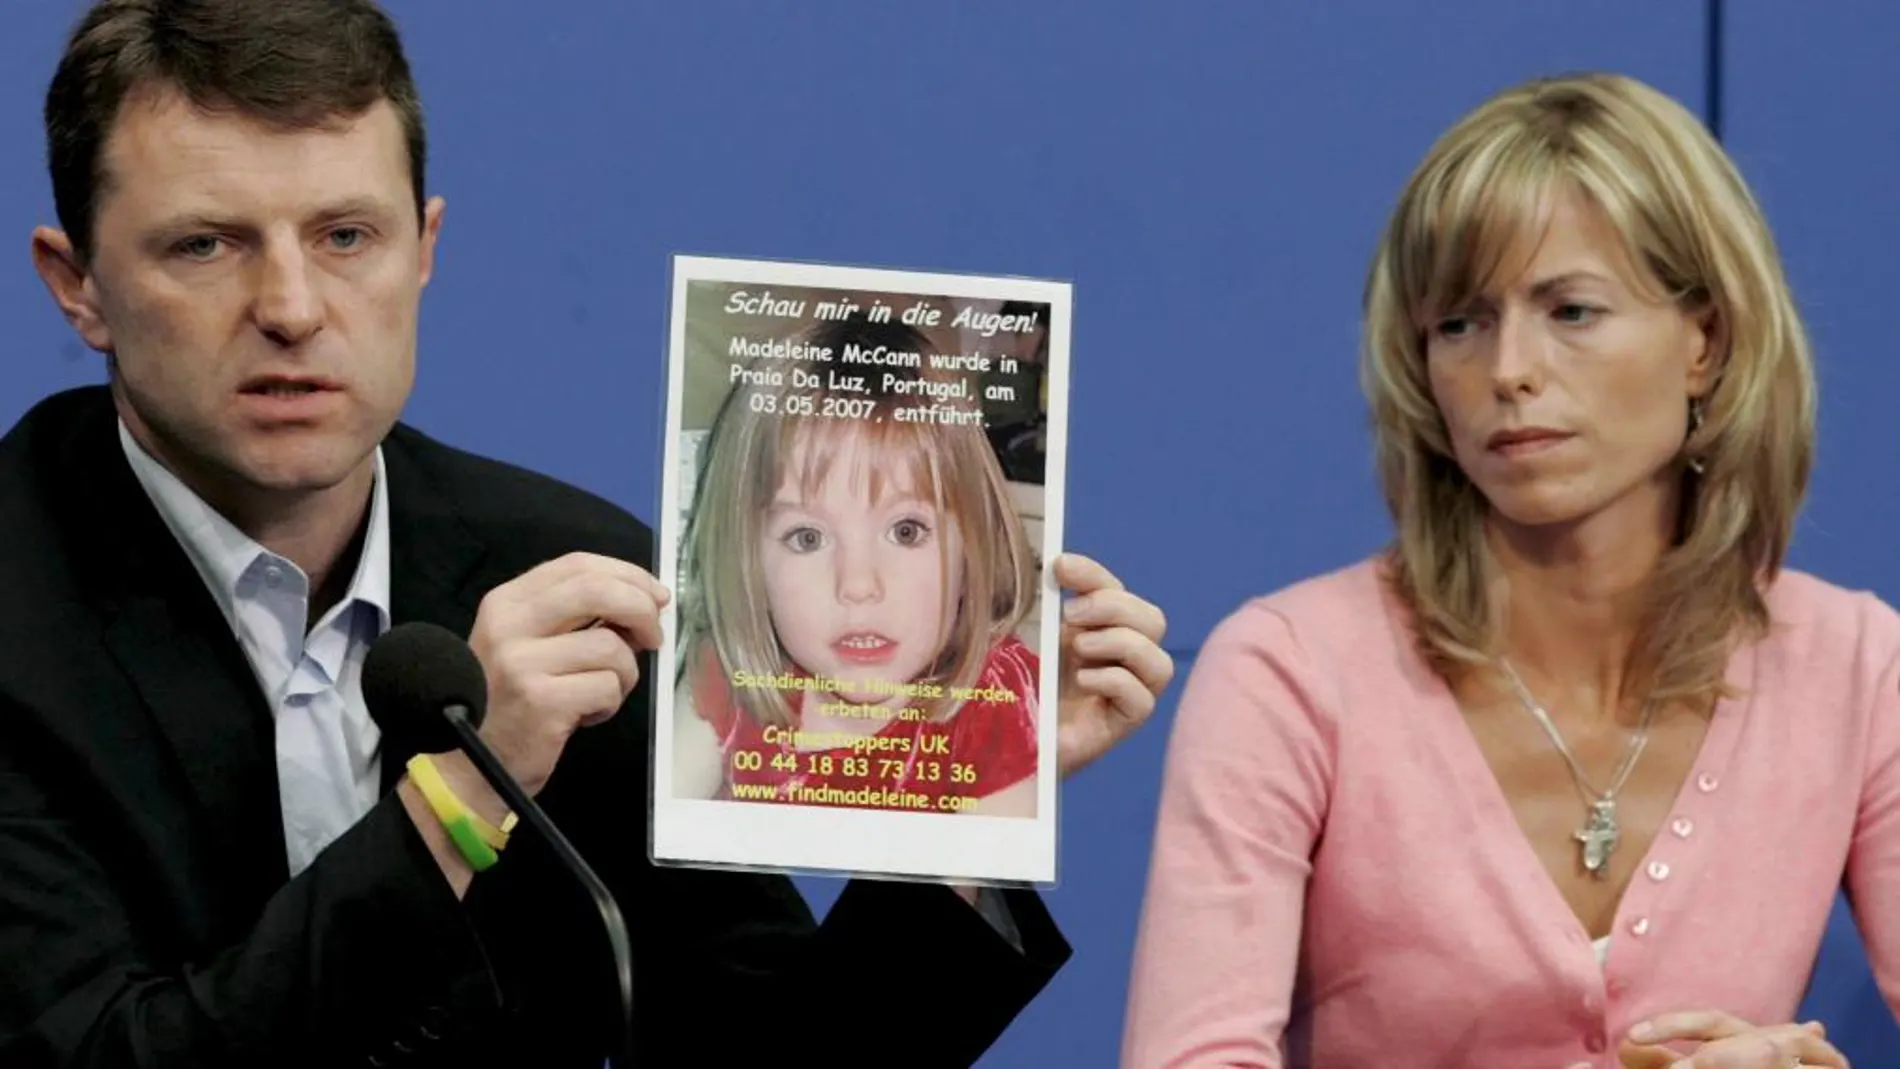 Gerry y Kate McCann, padres de Madeleine, muestran una foto de su hija desaparecida en mayo de 2007 en Portugal